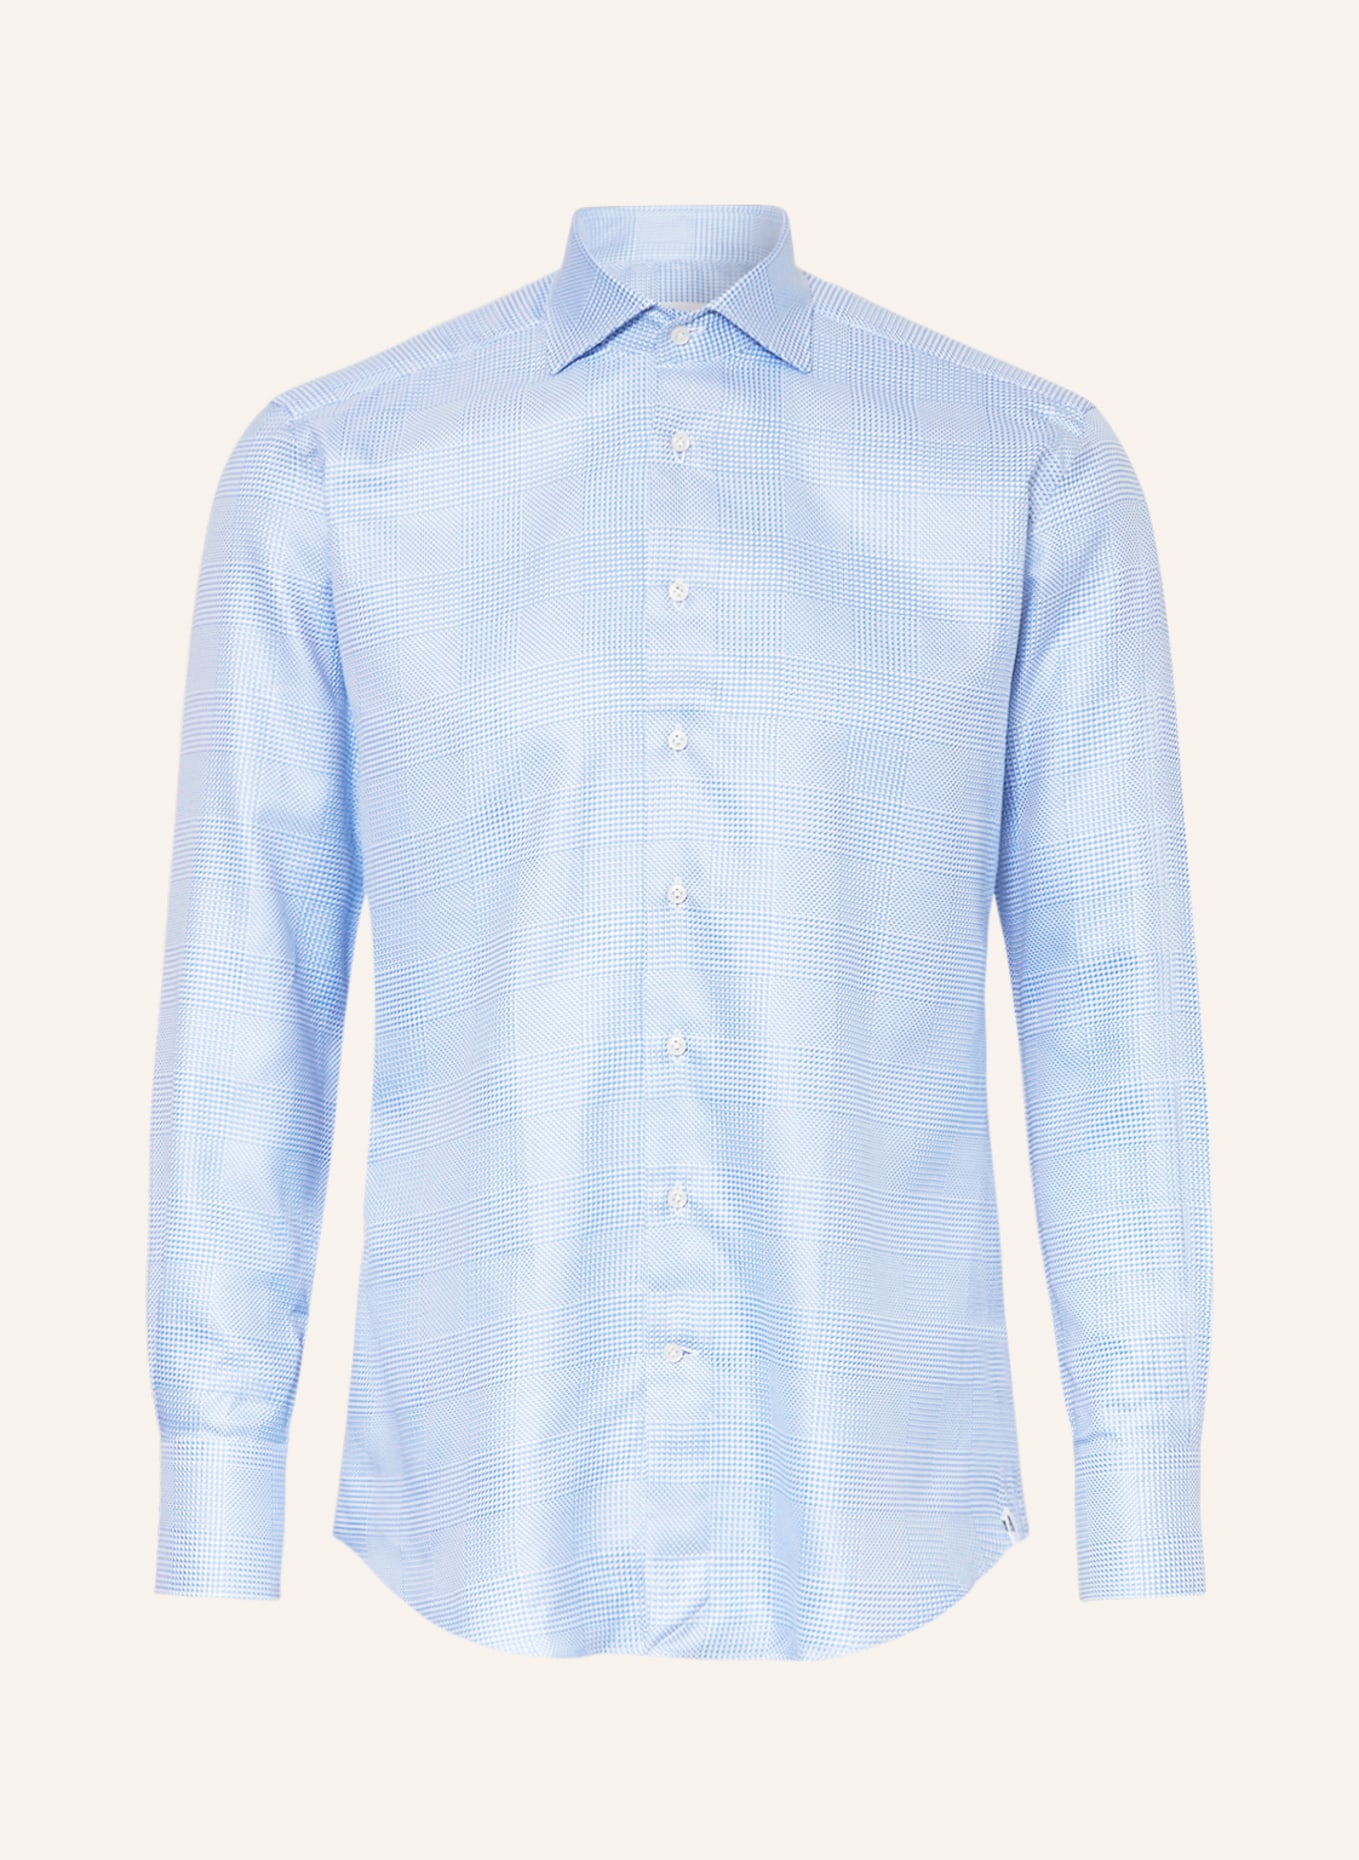 ARTIGIANO Shirt slim fit, Color: LIGHT BLUE/ WHITE (Image 1)